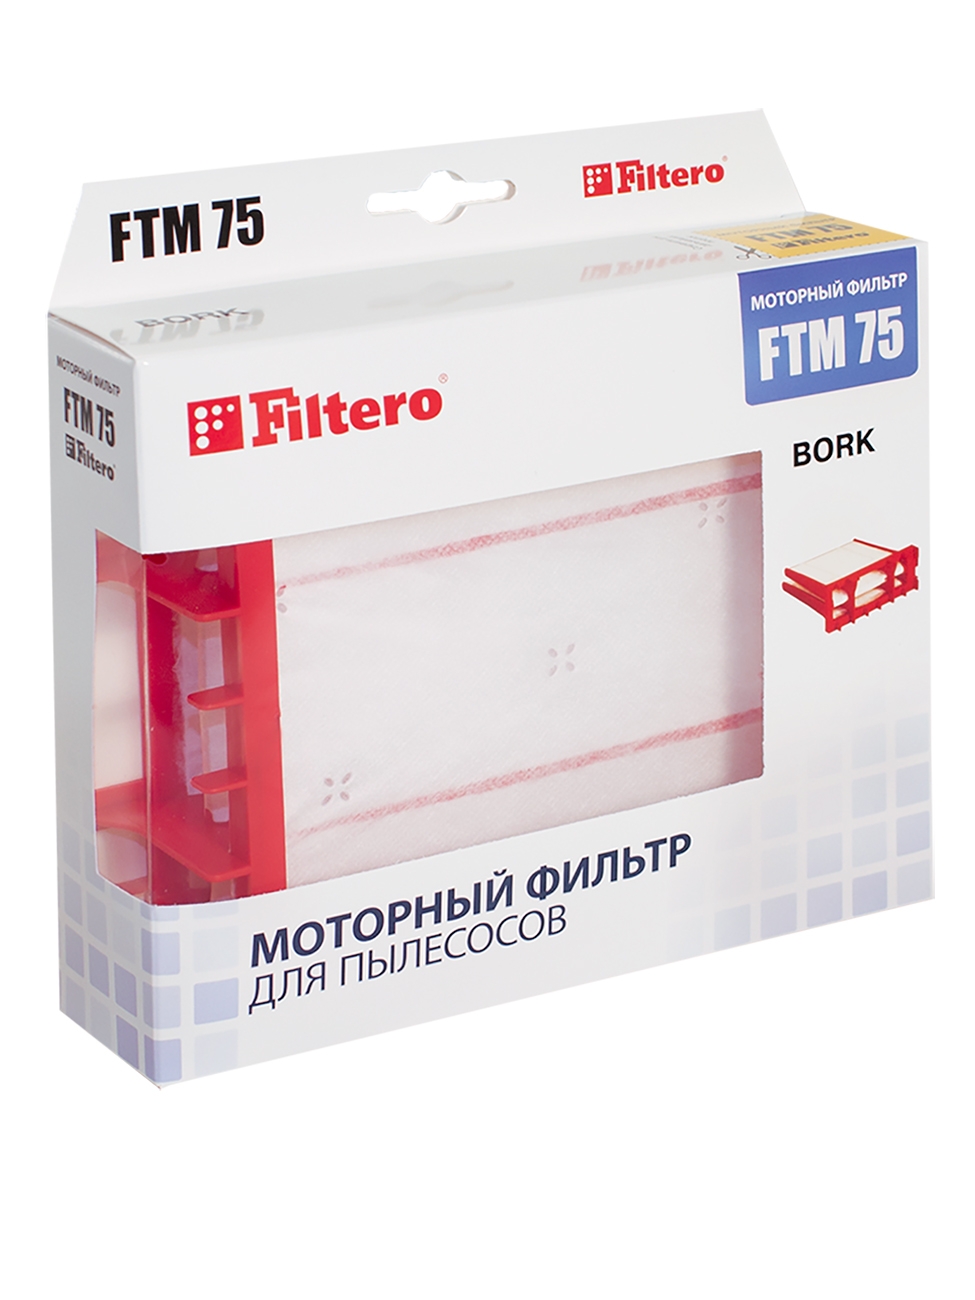 Фильтр моторный Filtero FTM 75 BRK Bork цена и фото